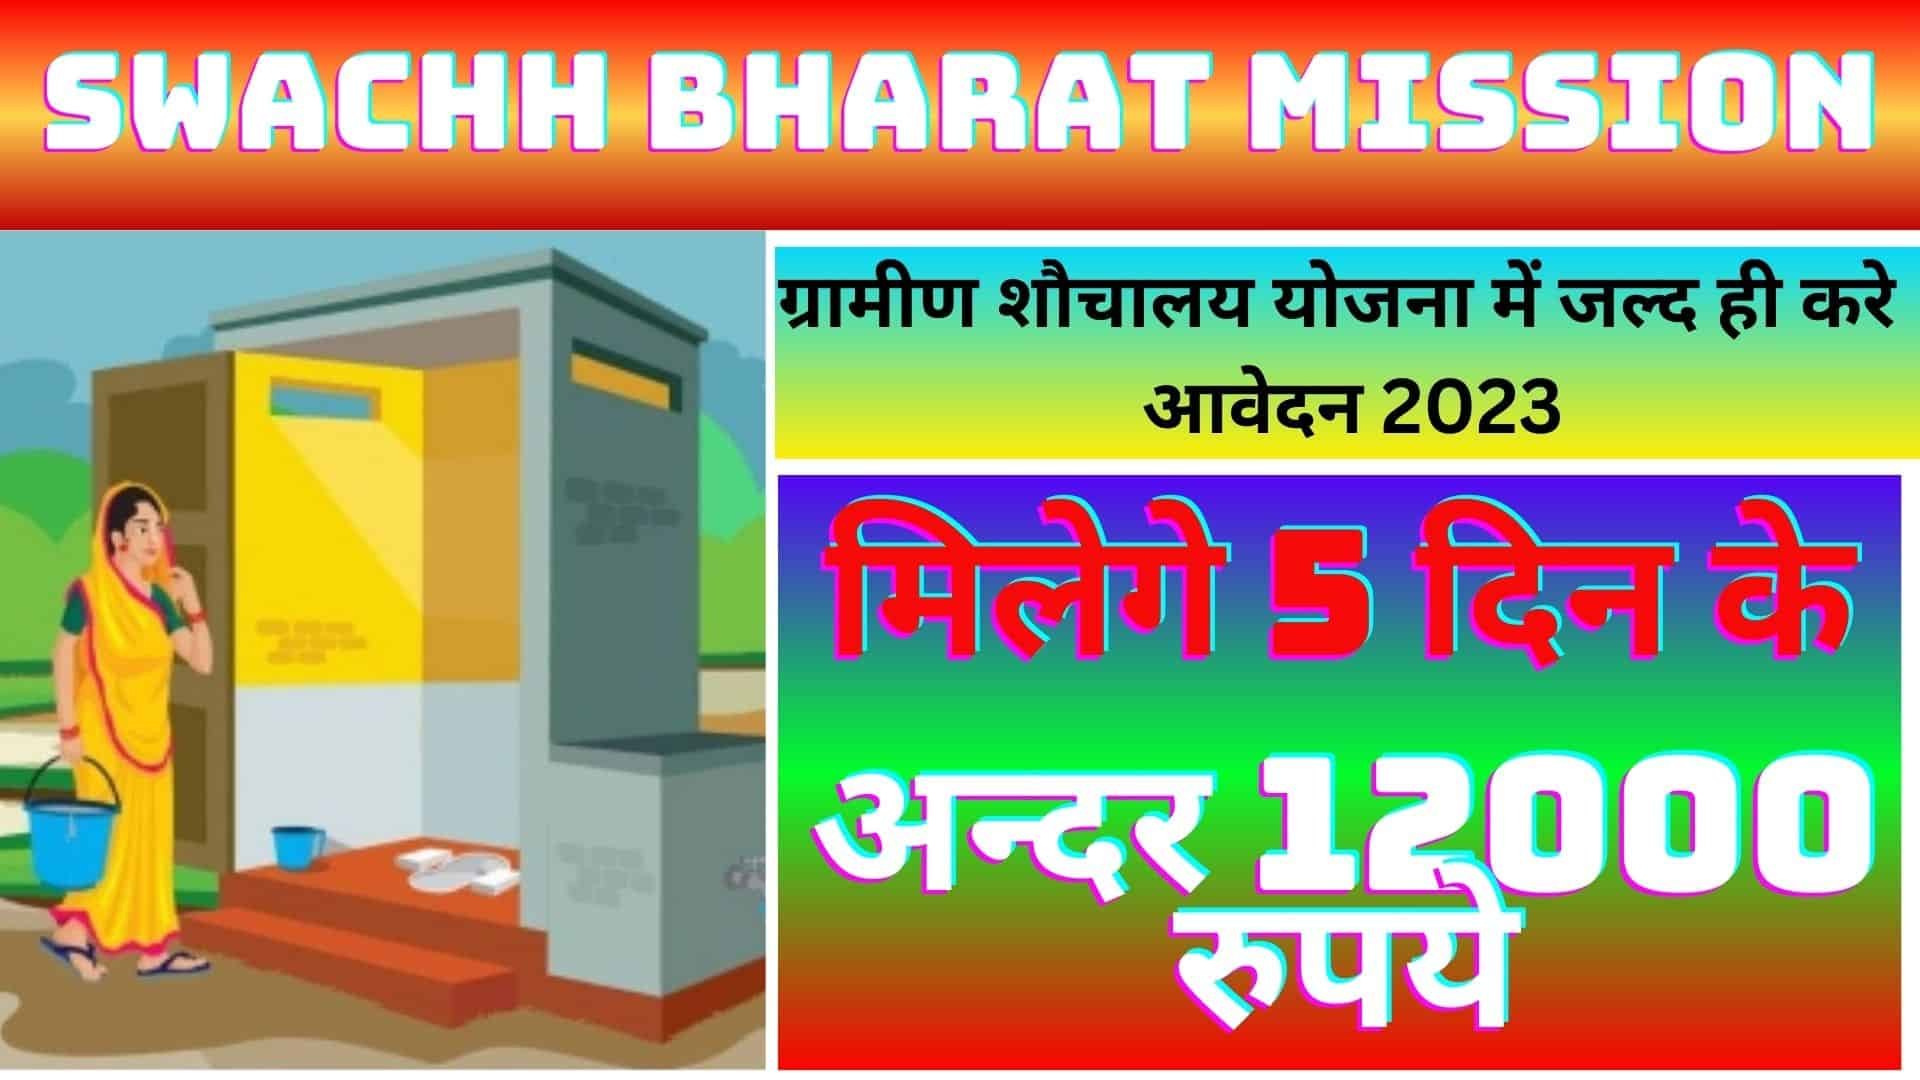 Swachh Bharat Mission Gramin Toilet Online Apply 2023 : ग्रामीण शौचालय योजना में जाने कैसा करना होगा आवेदन